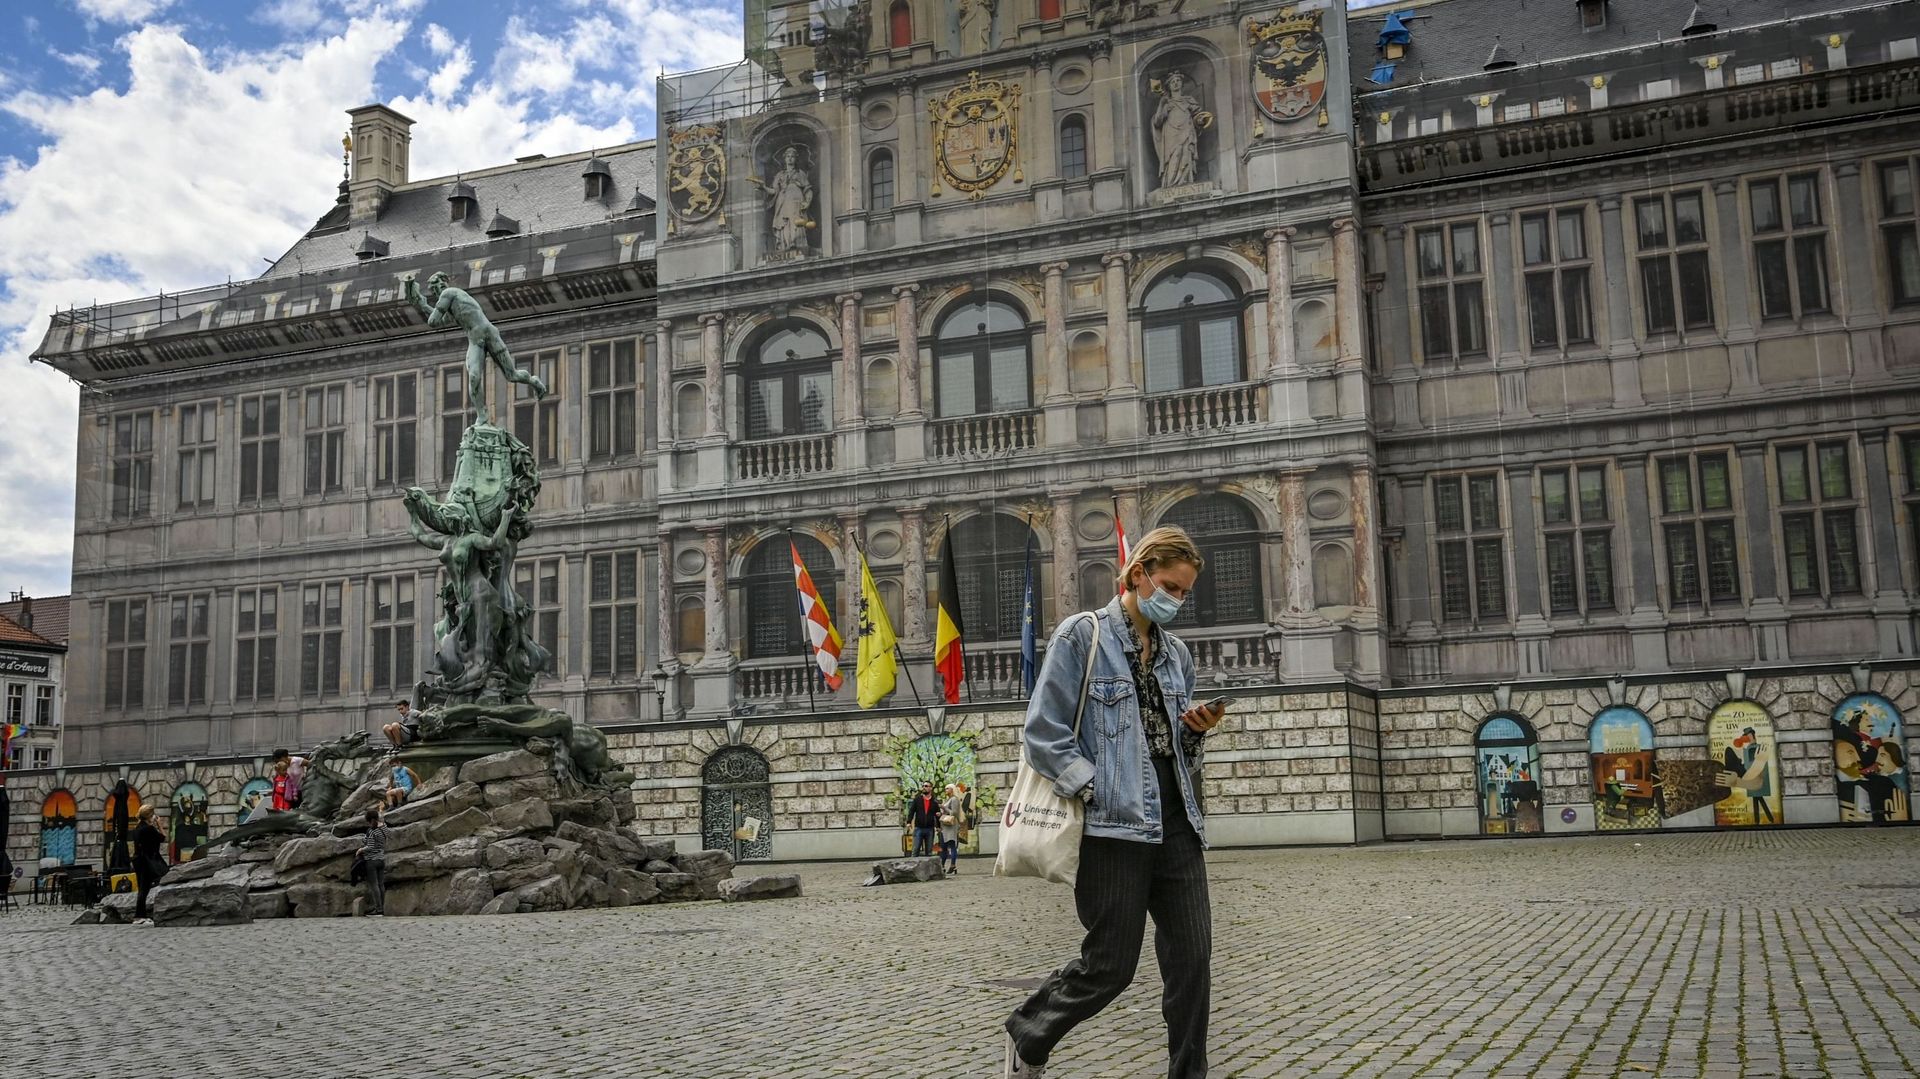 Marcheuse sur la Grand’Place d’Anvers, été 2020 (image d’illustration)